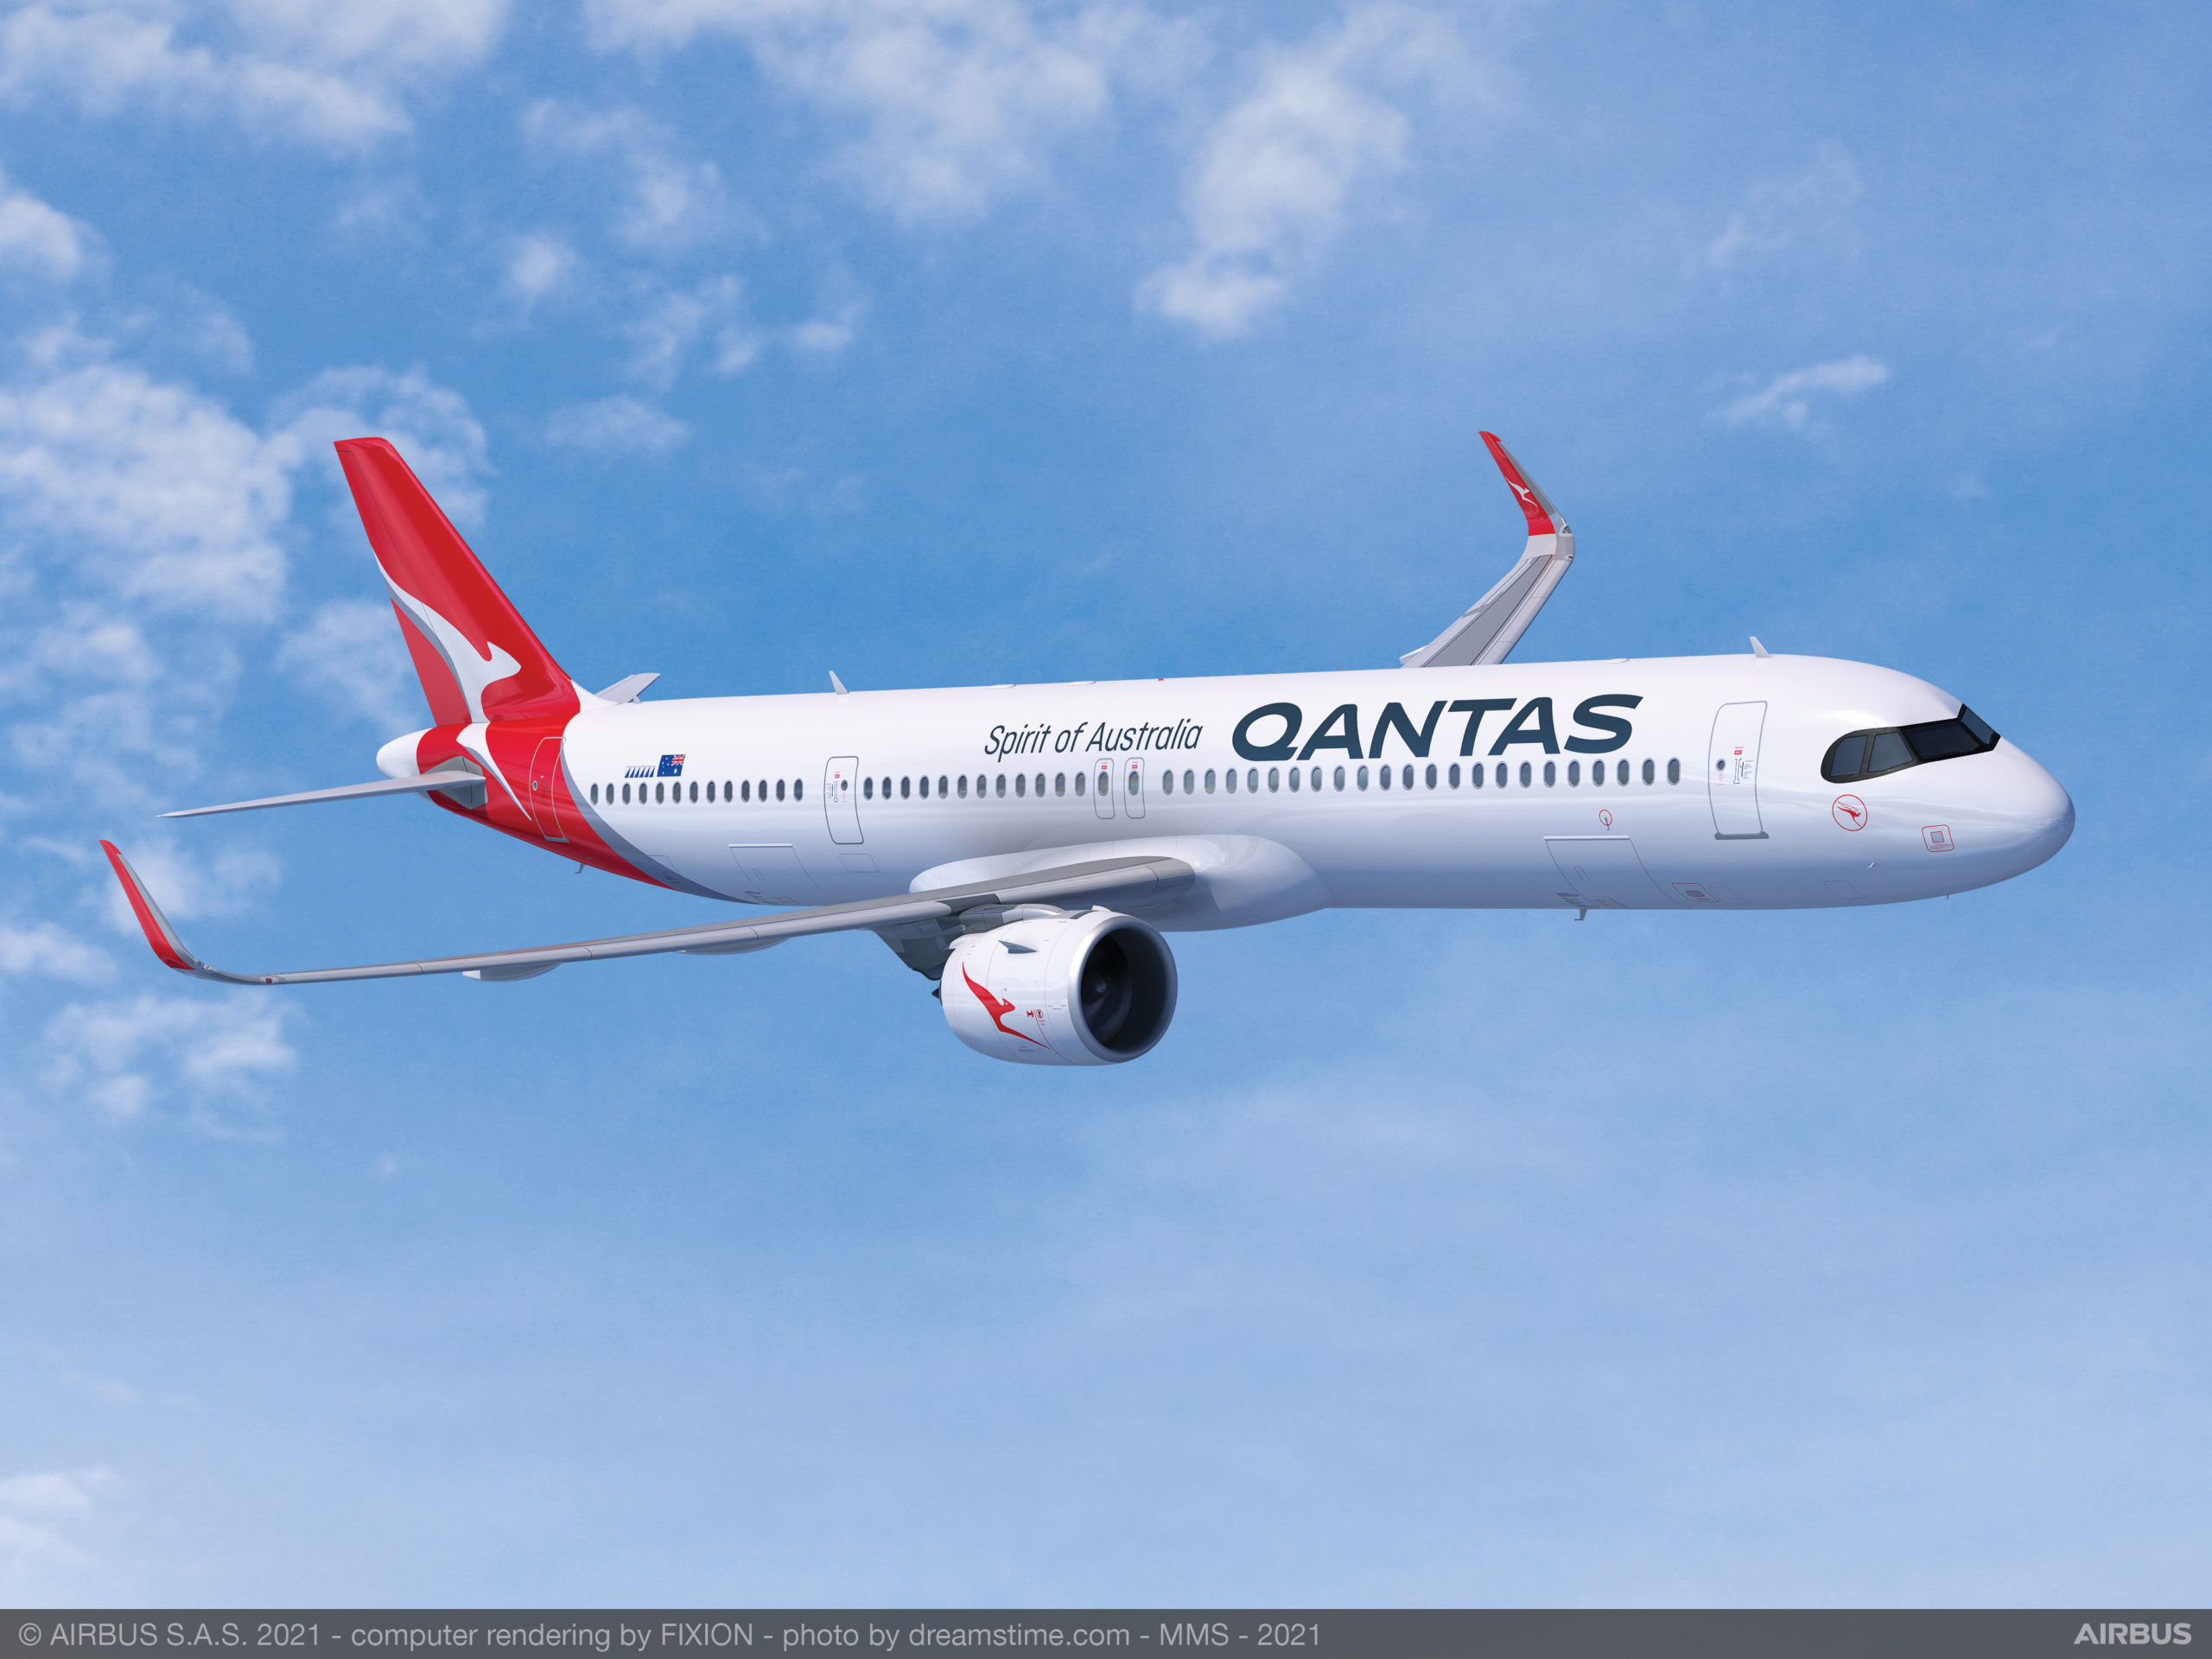 La aerolínea australiana Qantas cambia Airbus por Boeing para operar sus rutas domésticas